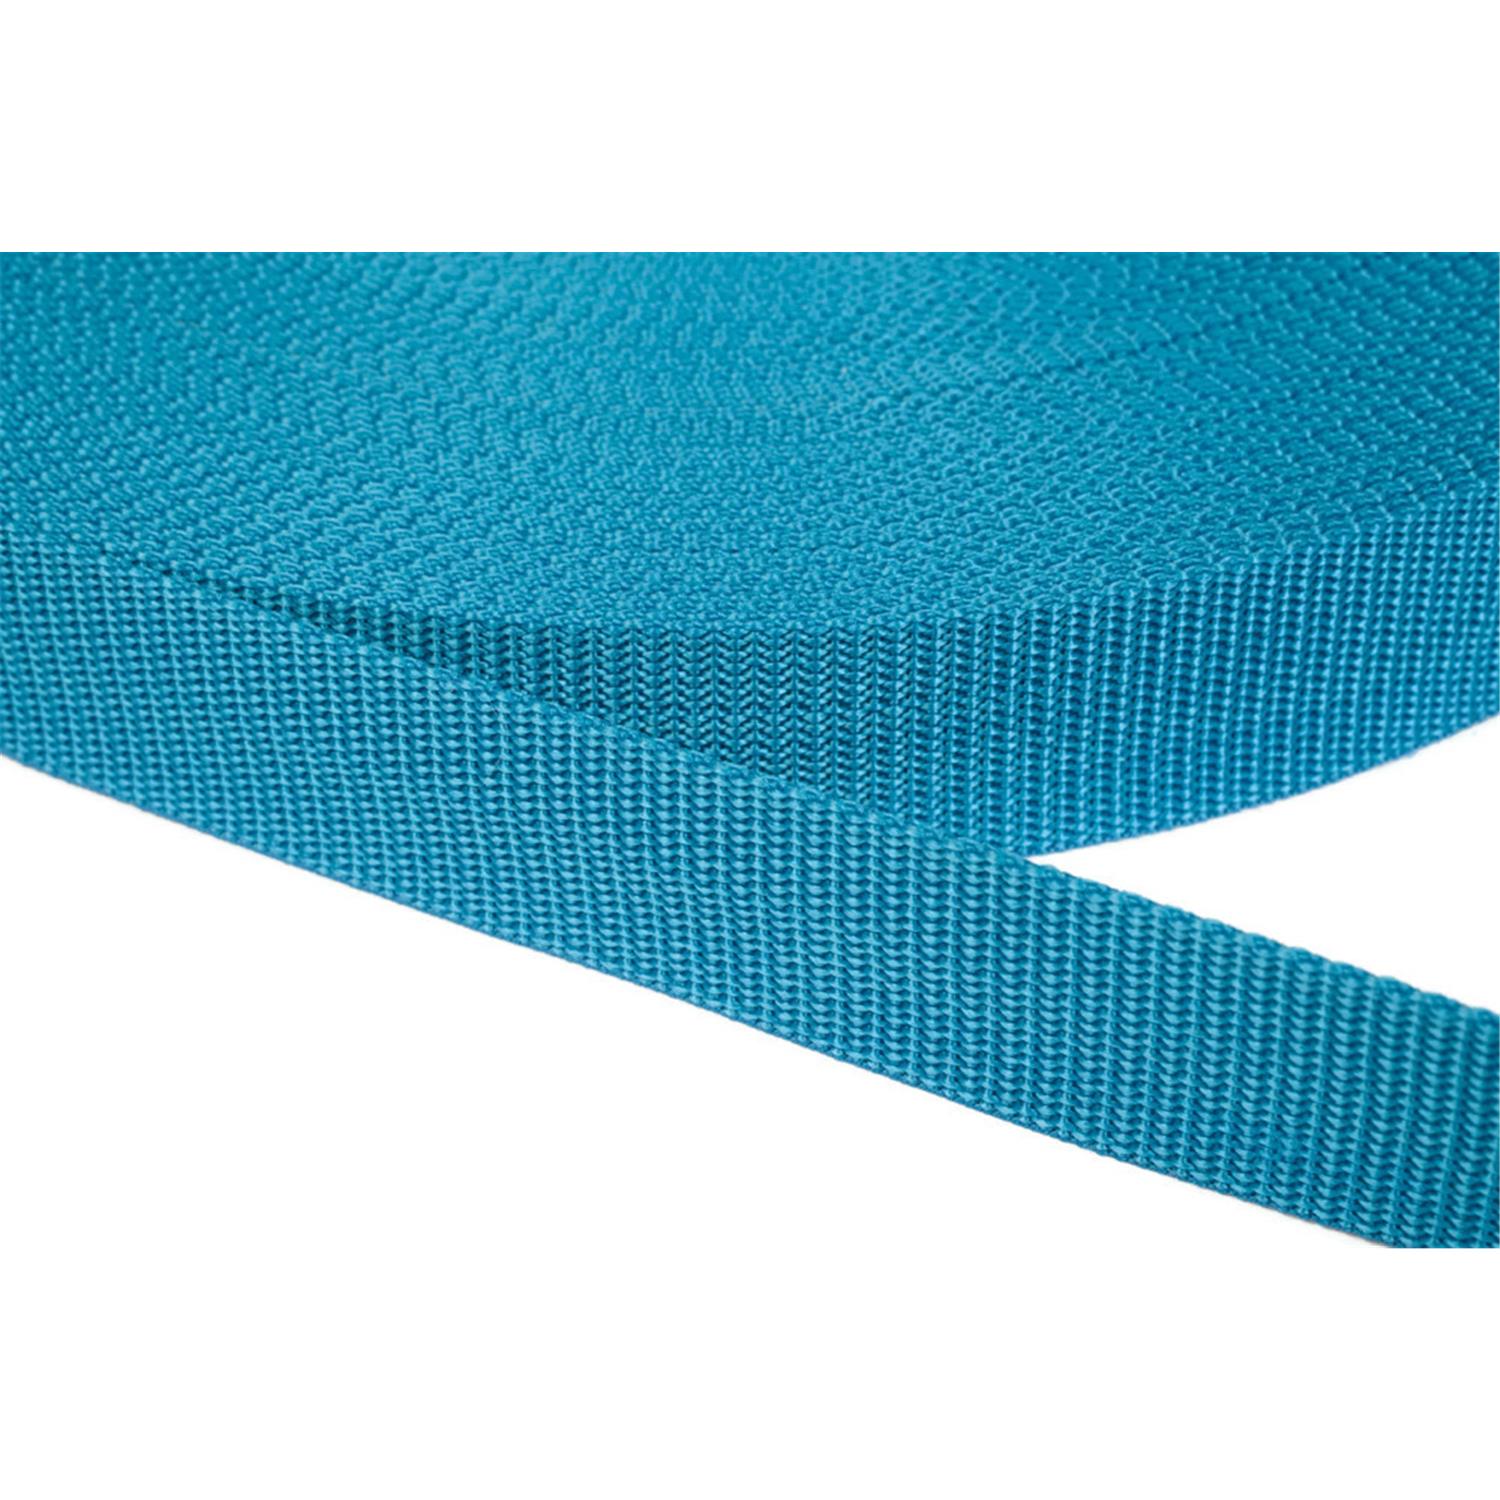 Gurtband 50mm breit aus Polypropylen in 41 Farben 29 - türkis 12 Meter